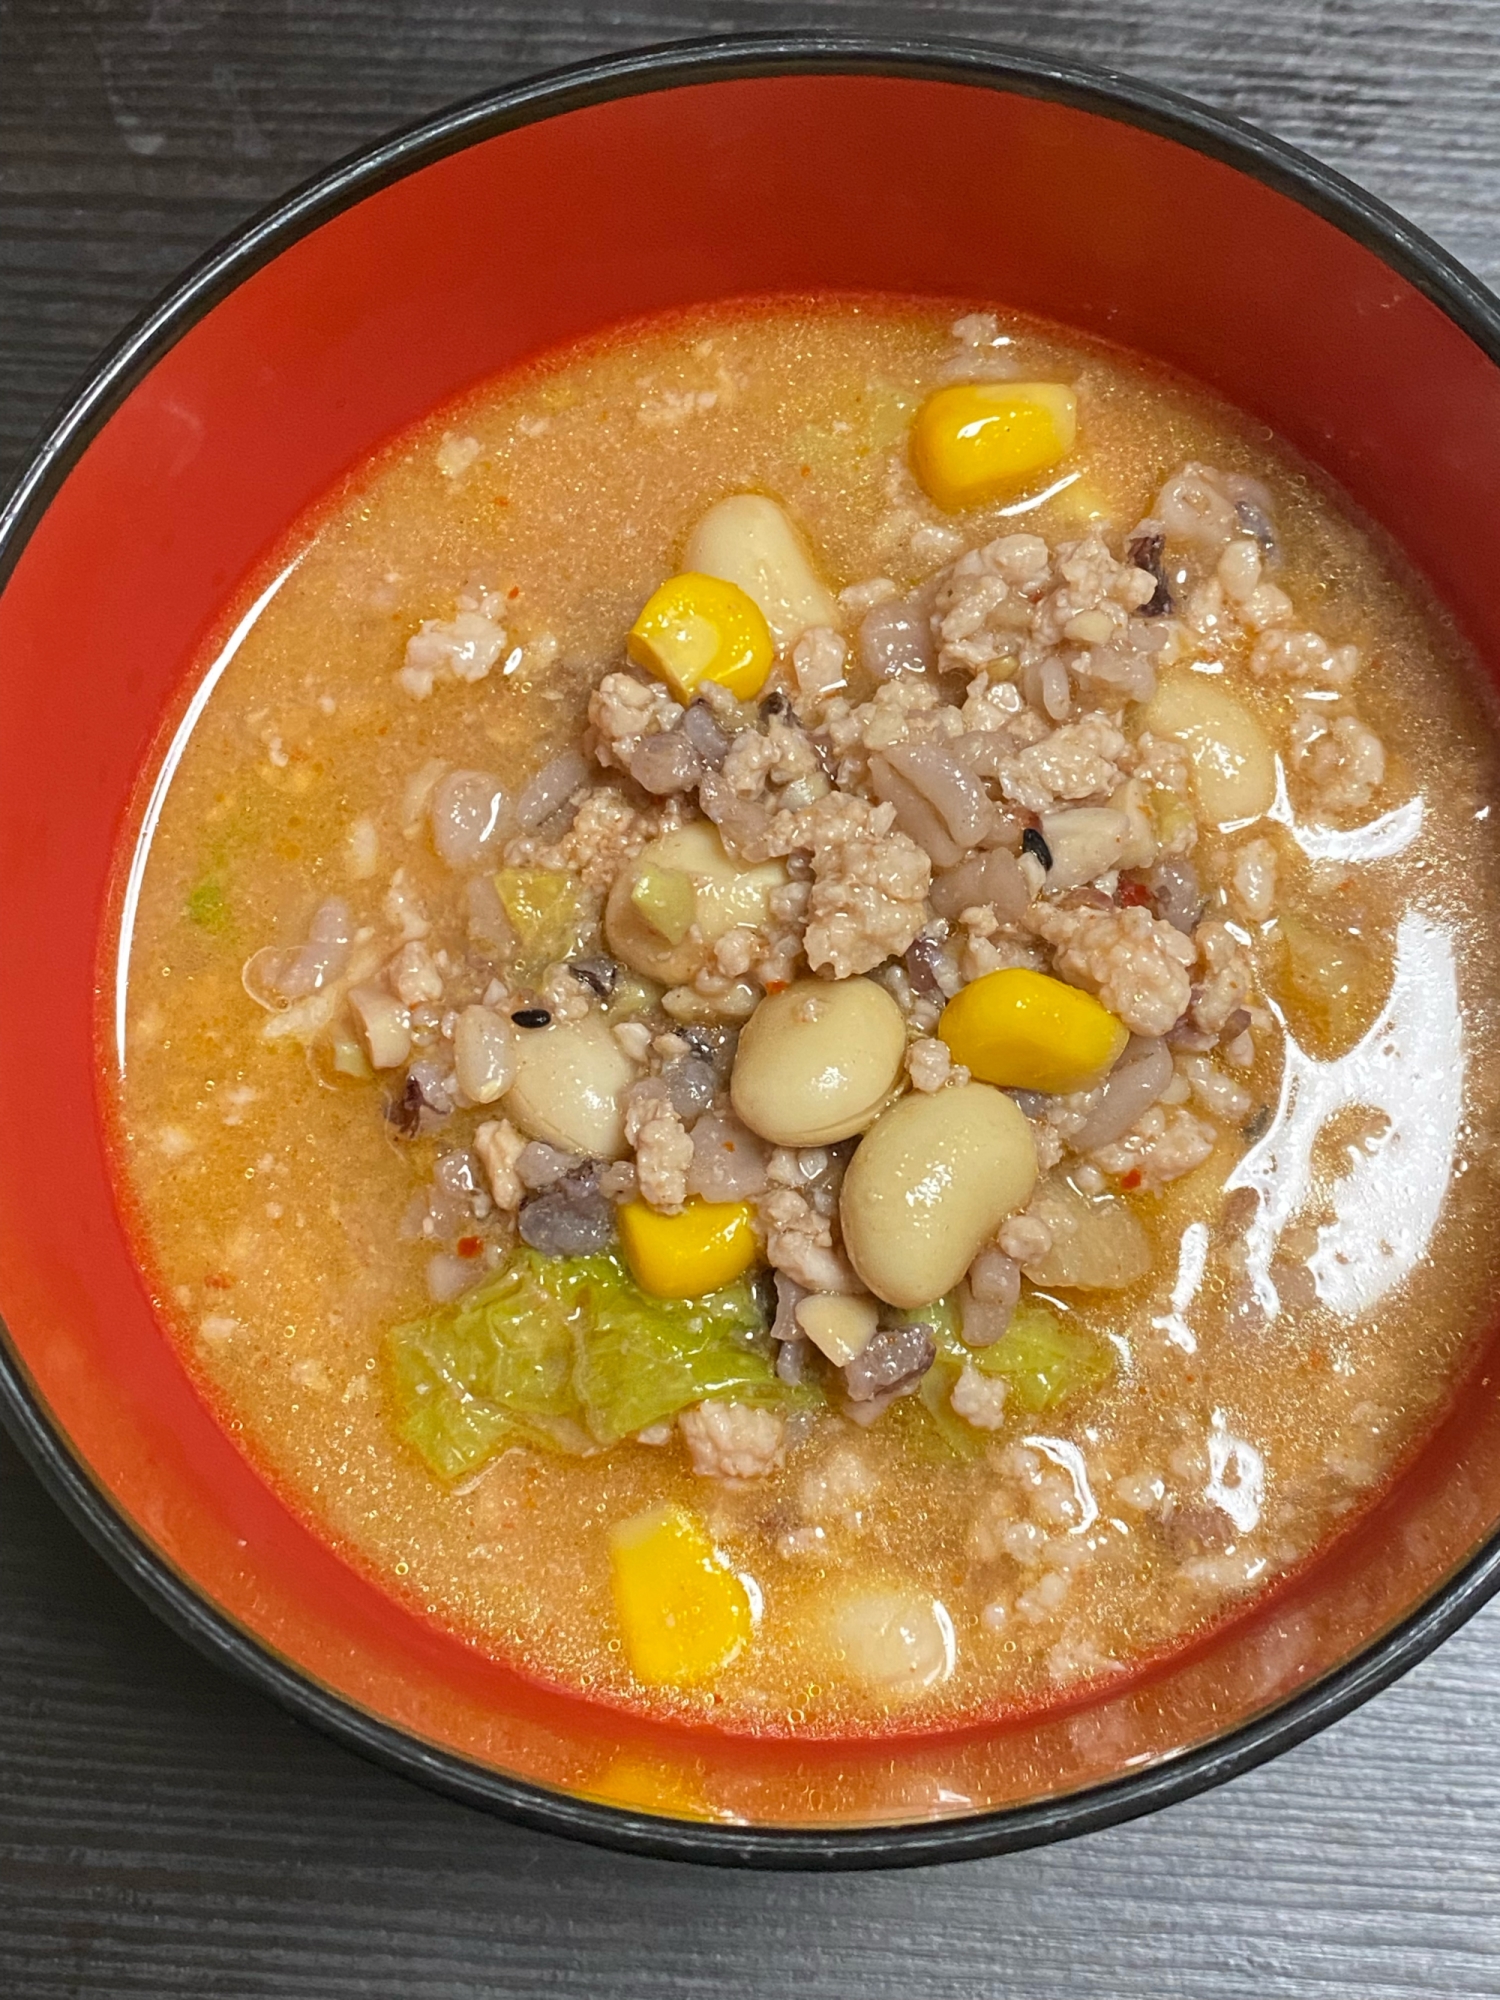 キムチ鍋の素で雑穀スープ